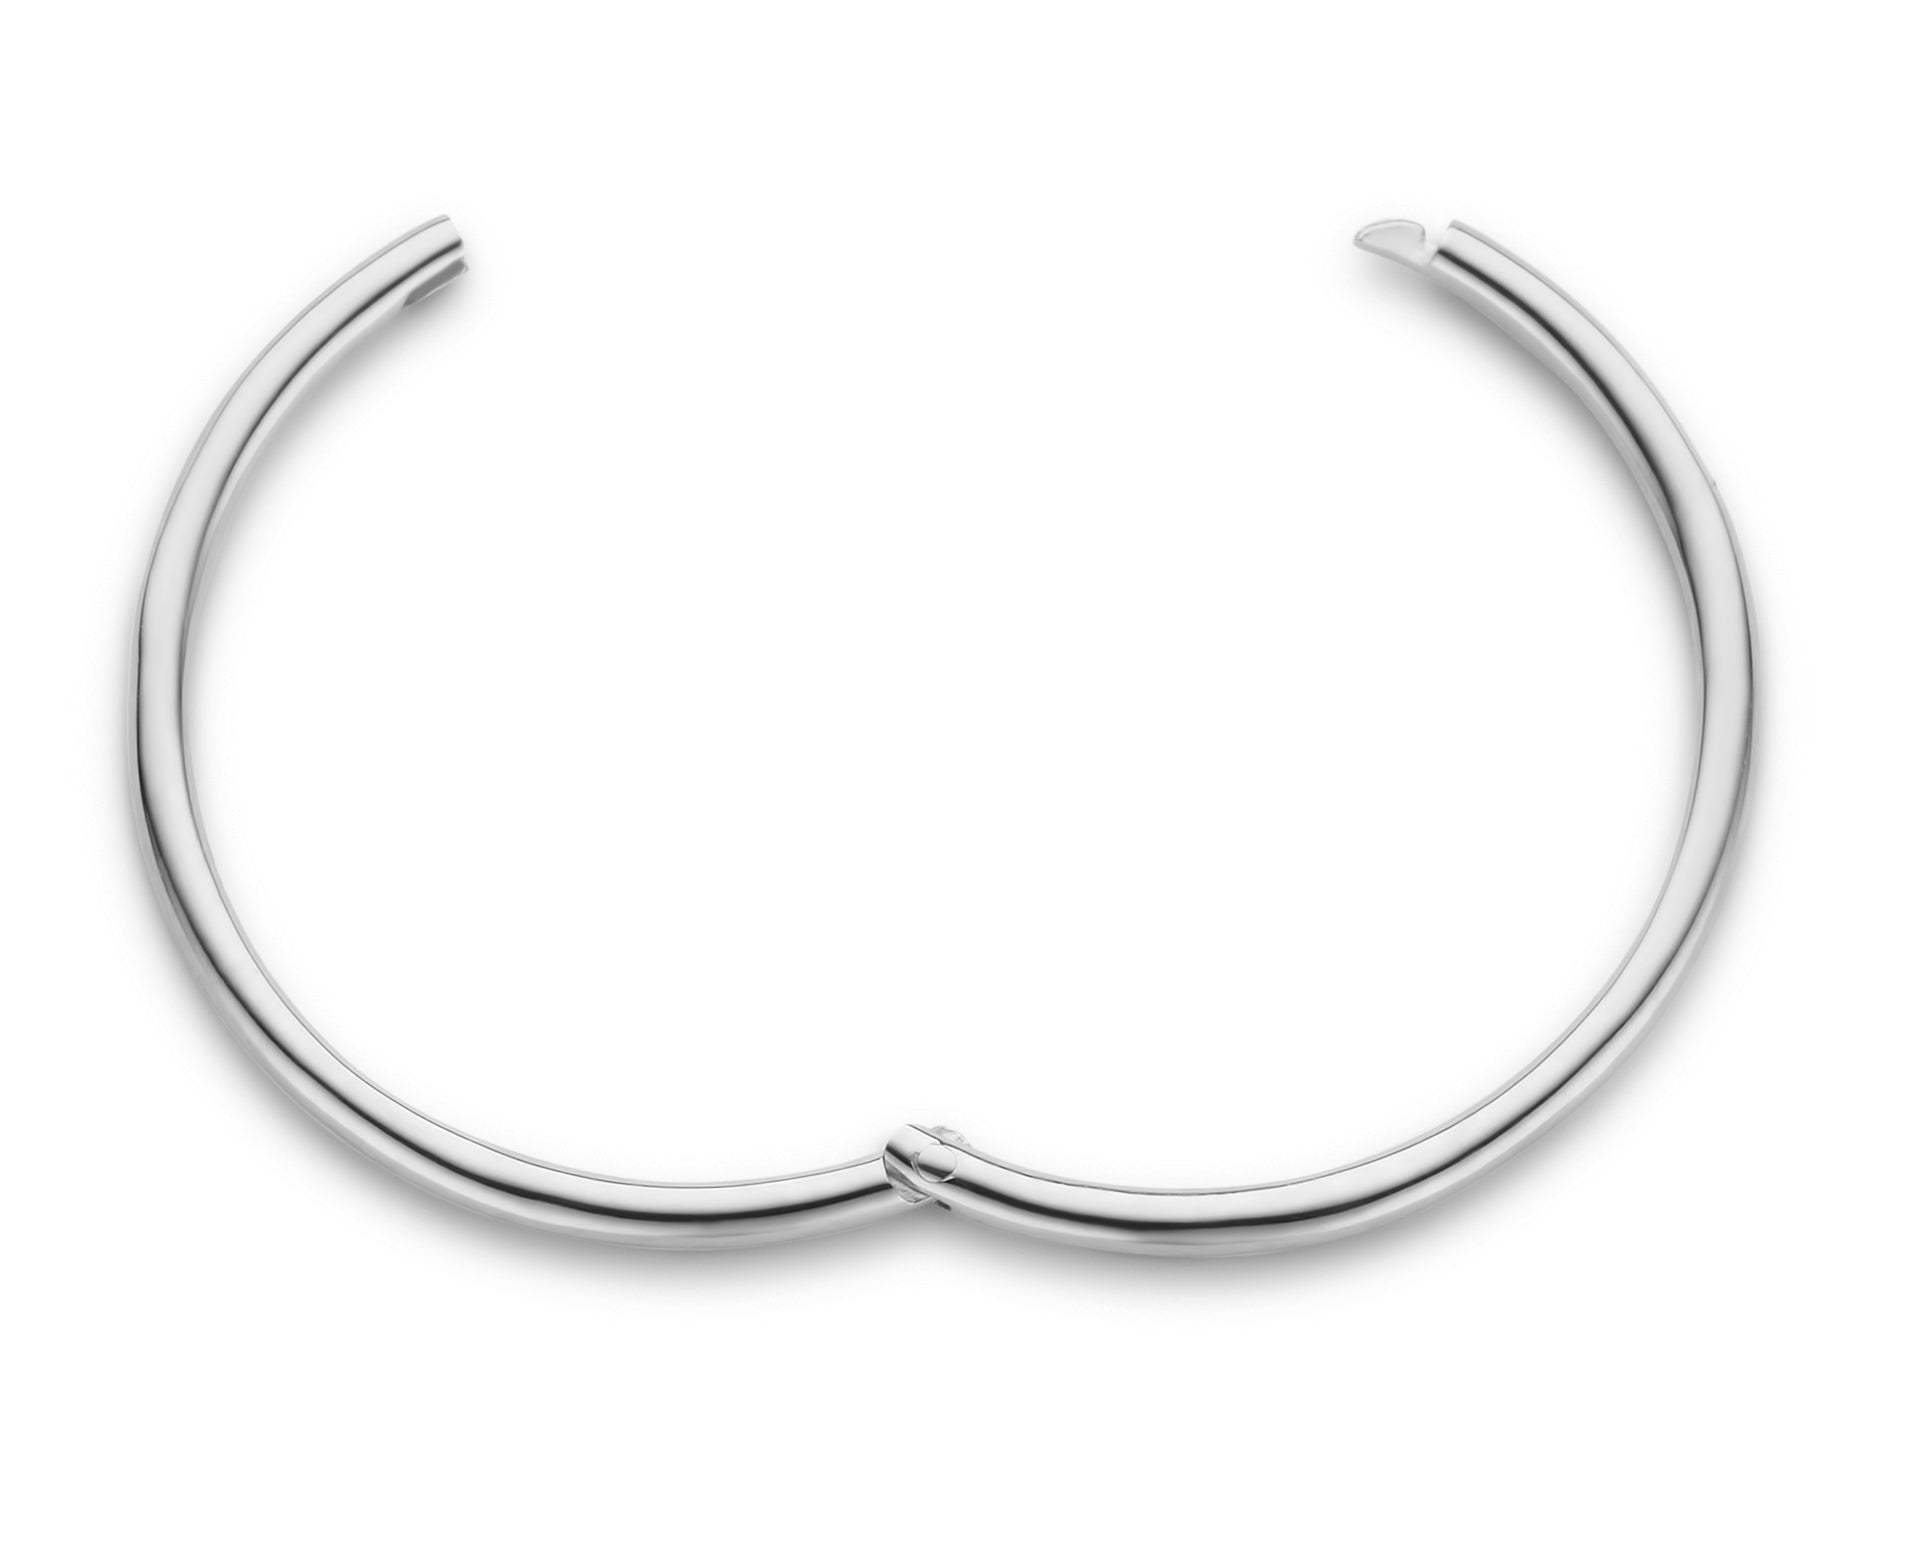 Imagine hoop øreringe uden vedhæng - medium diameter 2 cm - 14 kt. hvidguld-2